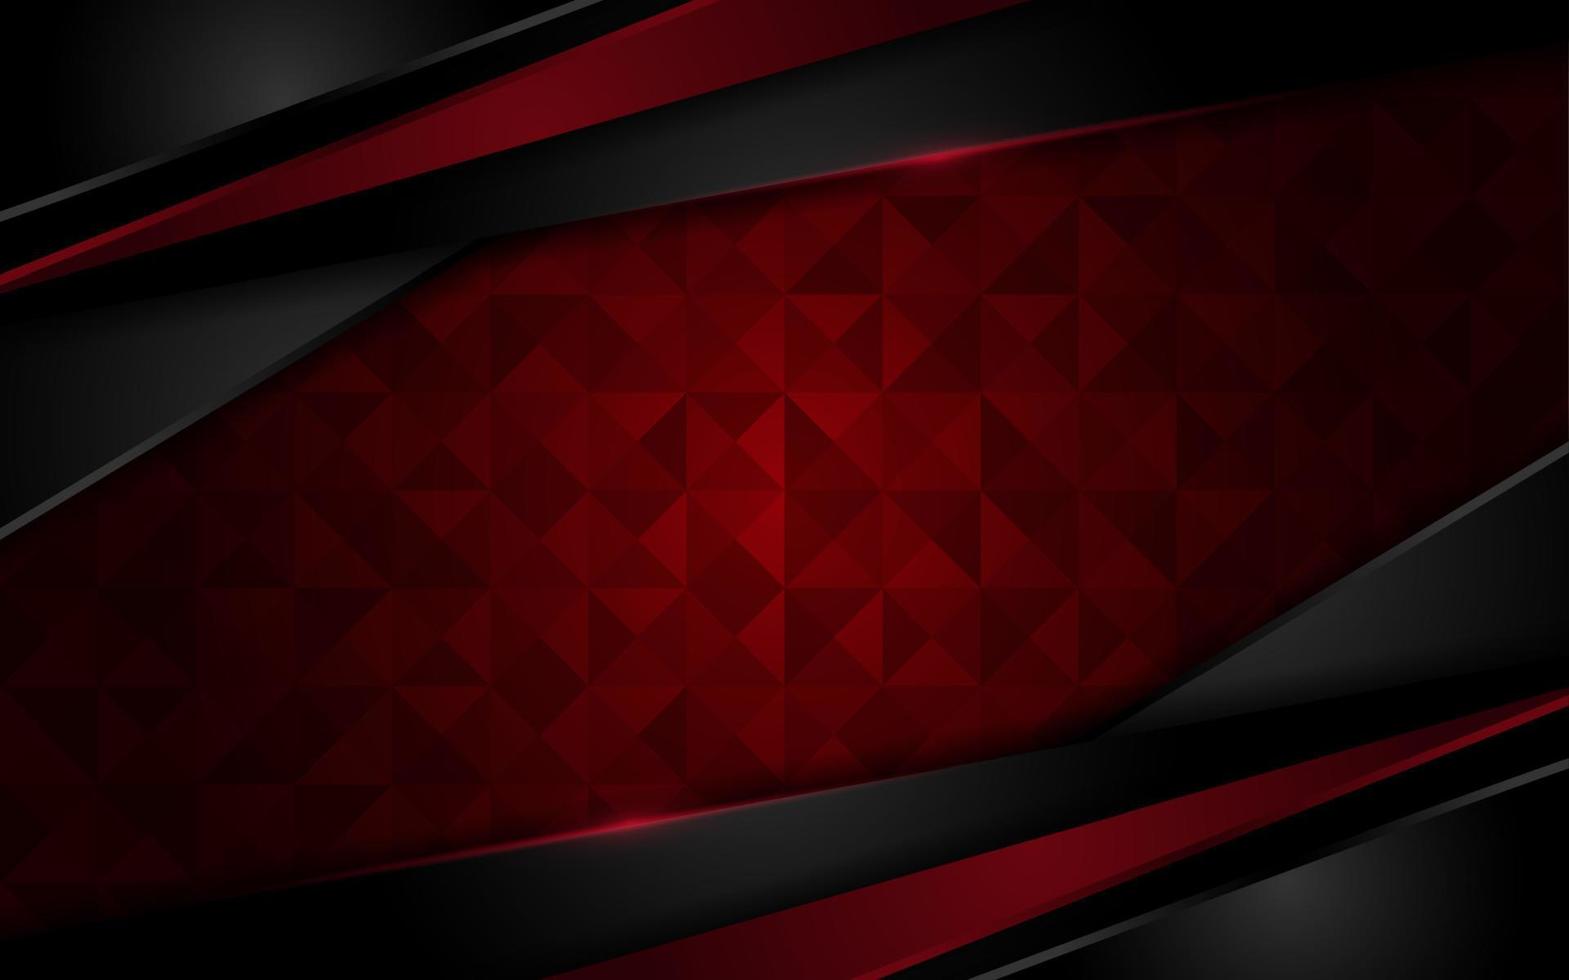 fondo rojo oscuro moderno con diseño de capa de superposición de efecto de textura vector